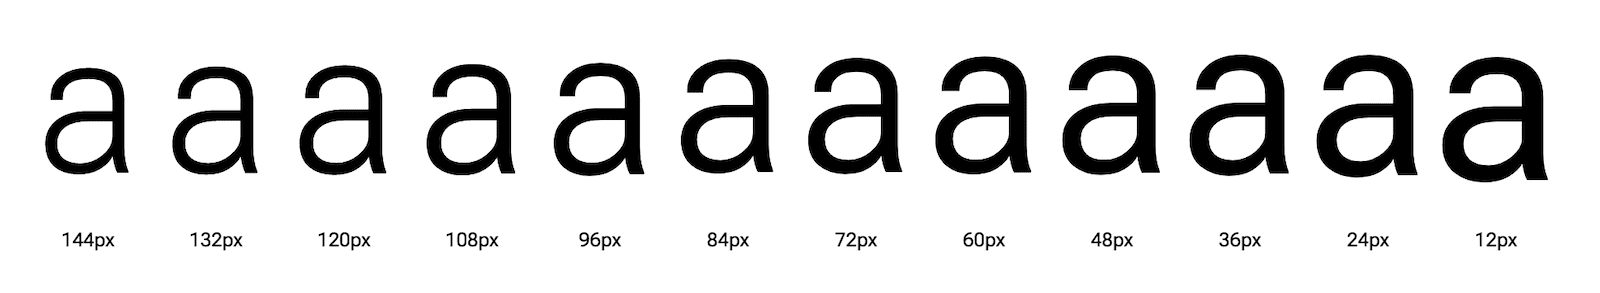 Буква «а» показана в разных оптических размерах.